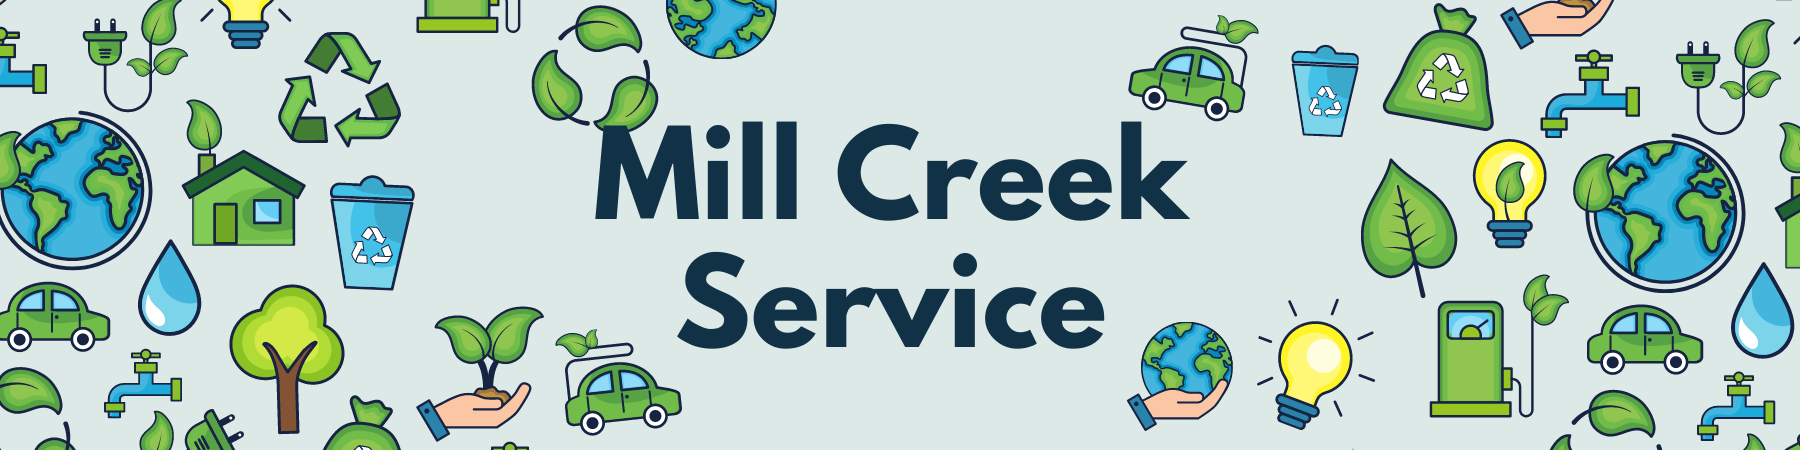 Mill Creek Service